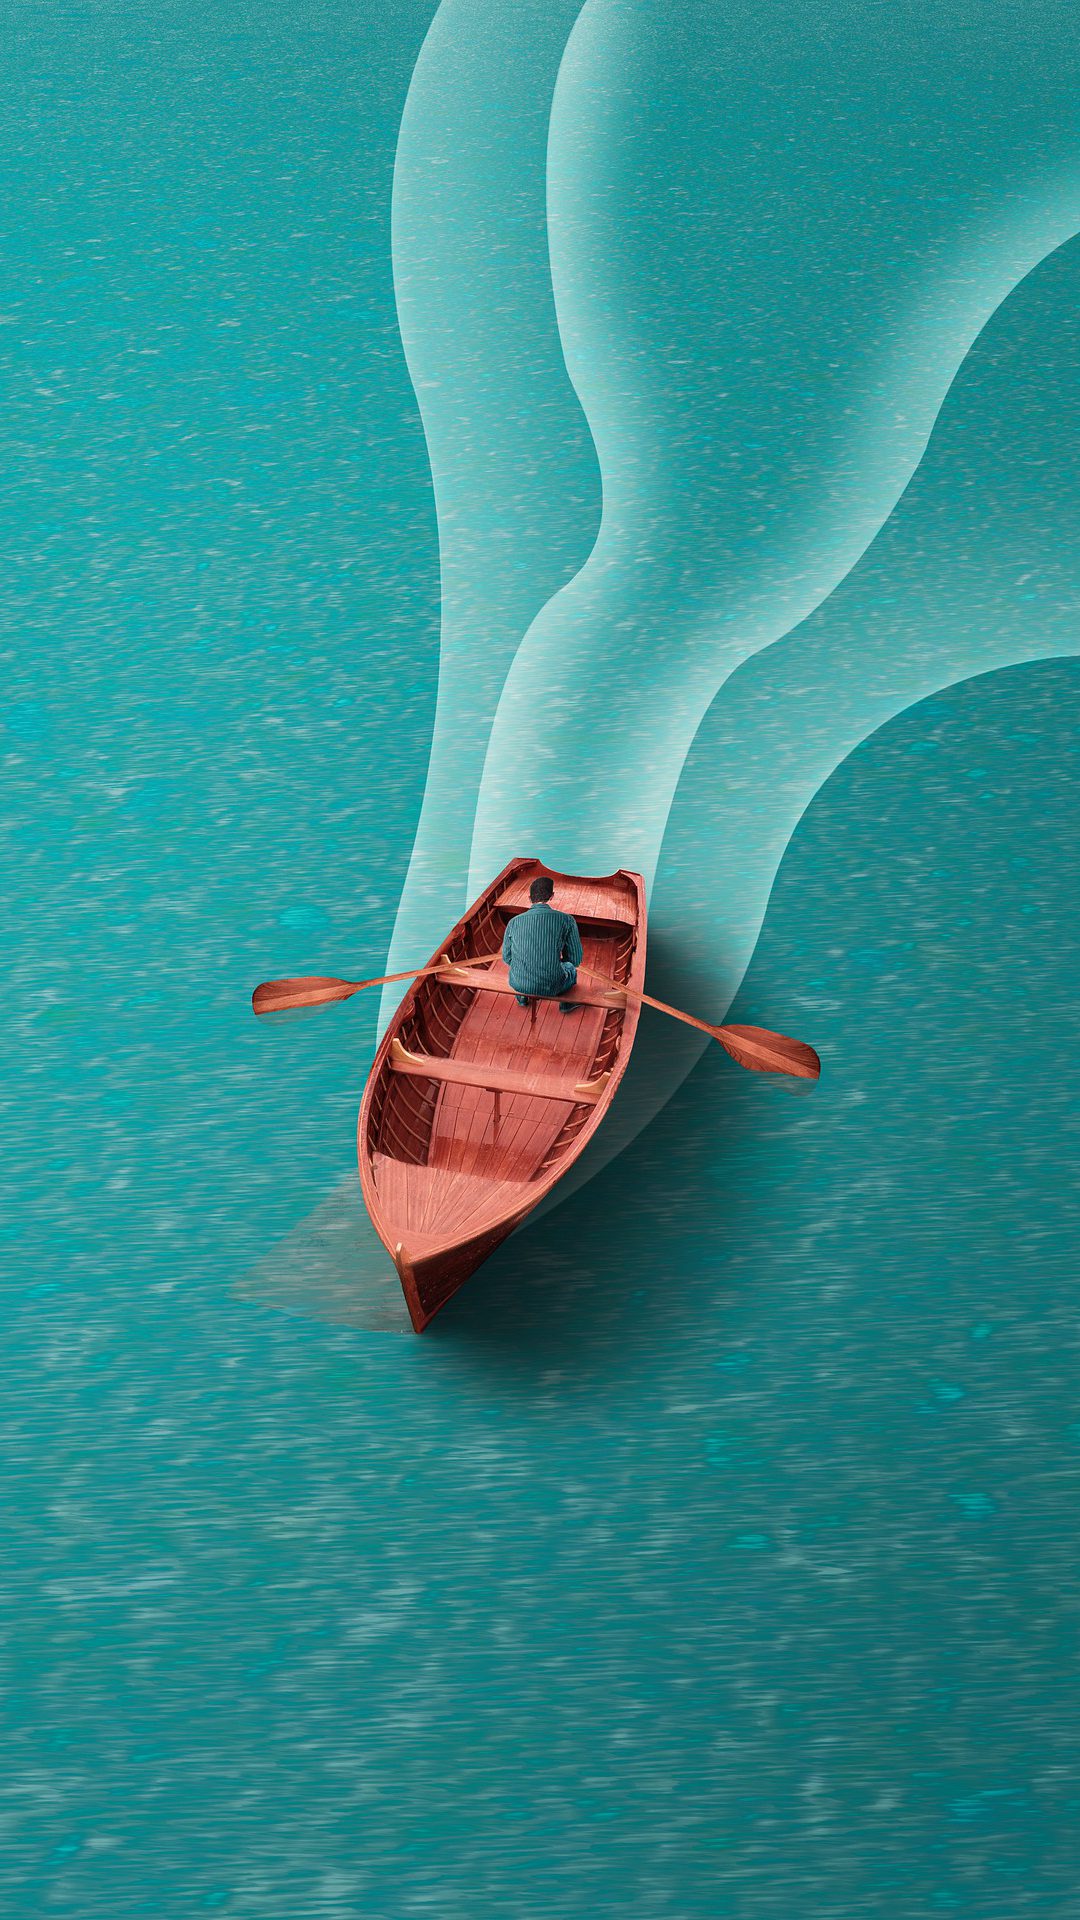 一个划船的<span style='color:red;'>男子</span>非主流插画手机壁纸图片 平静蔚蓝的湖面